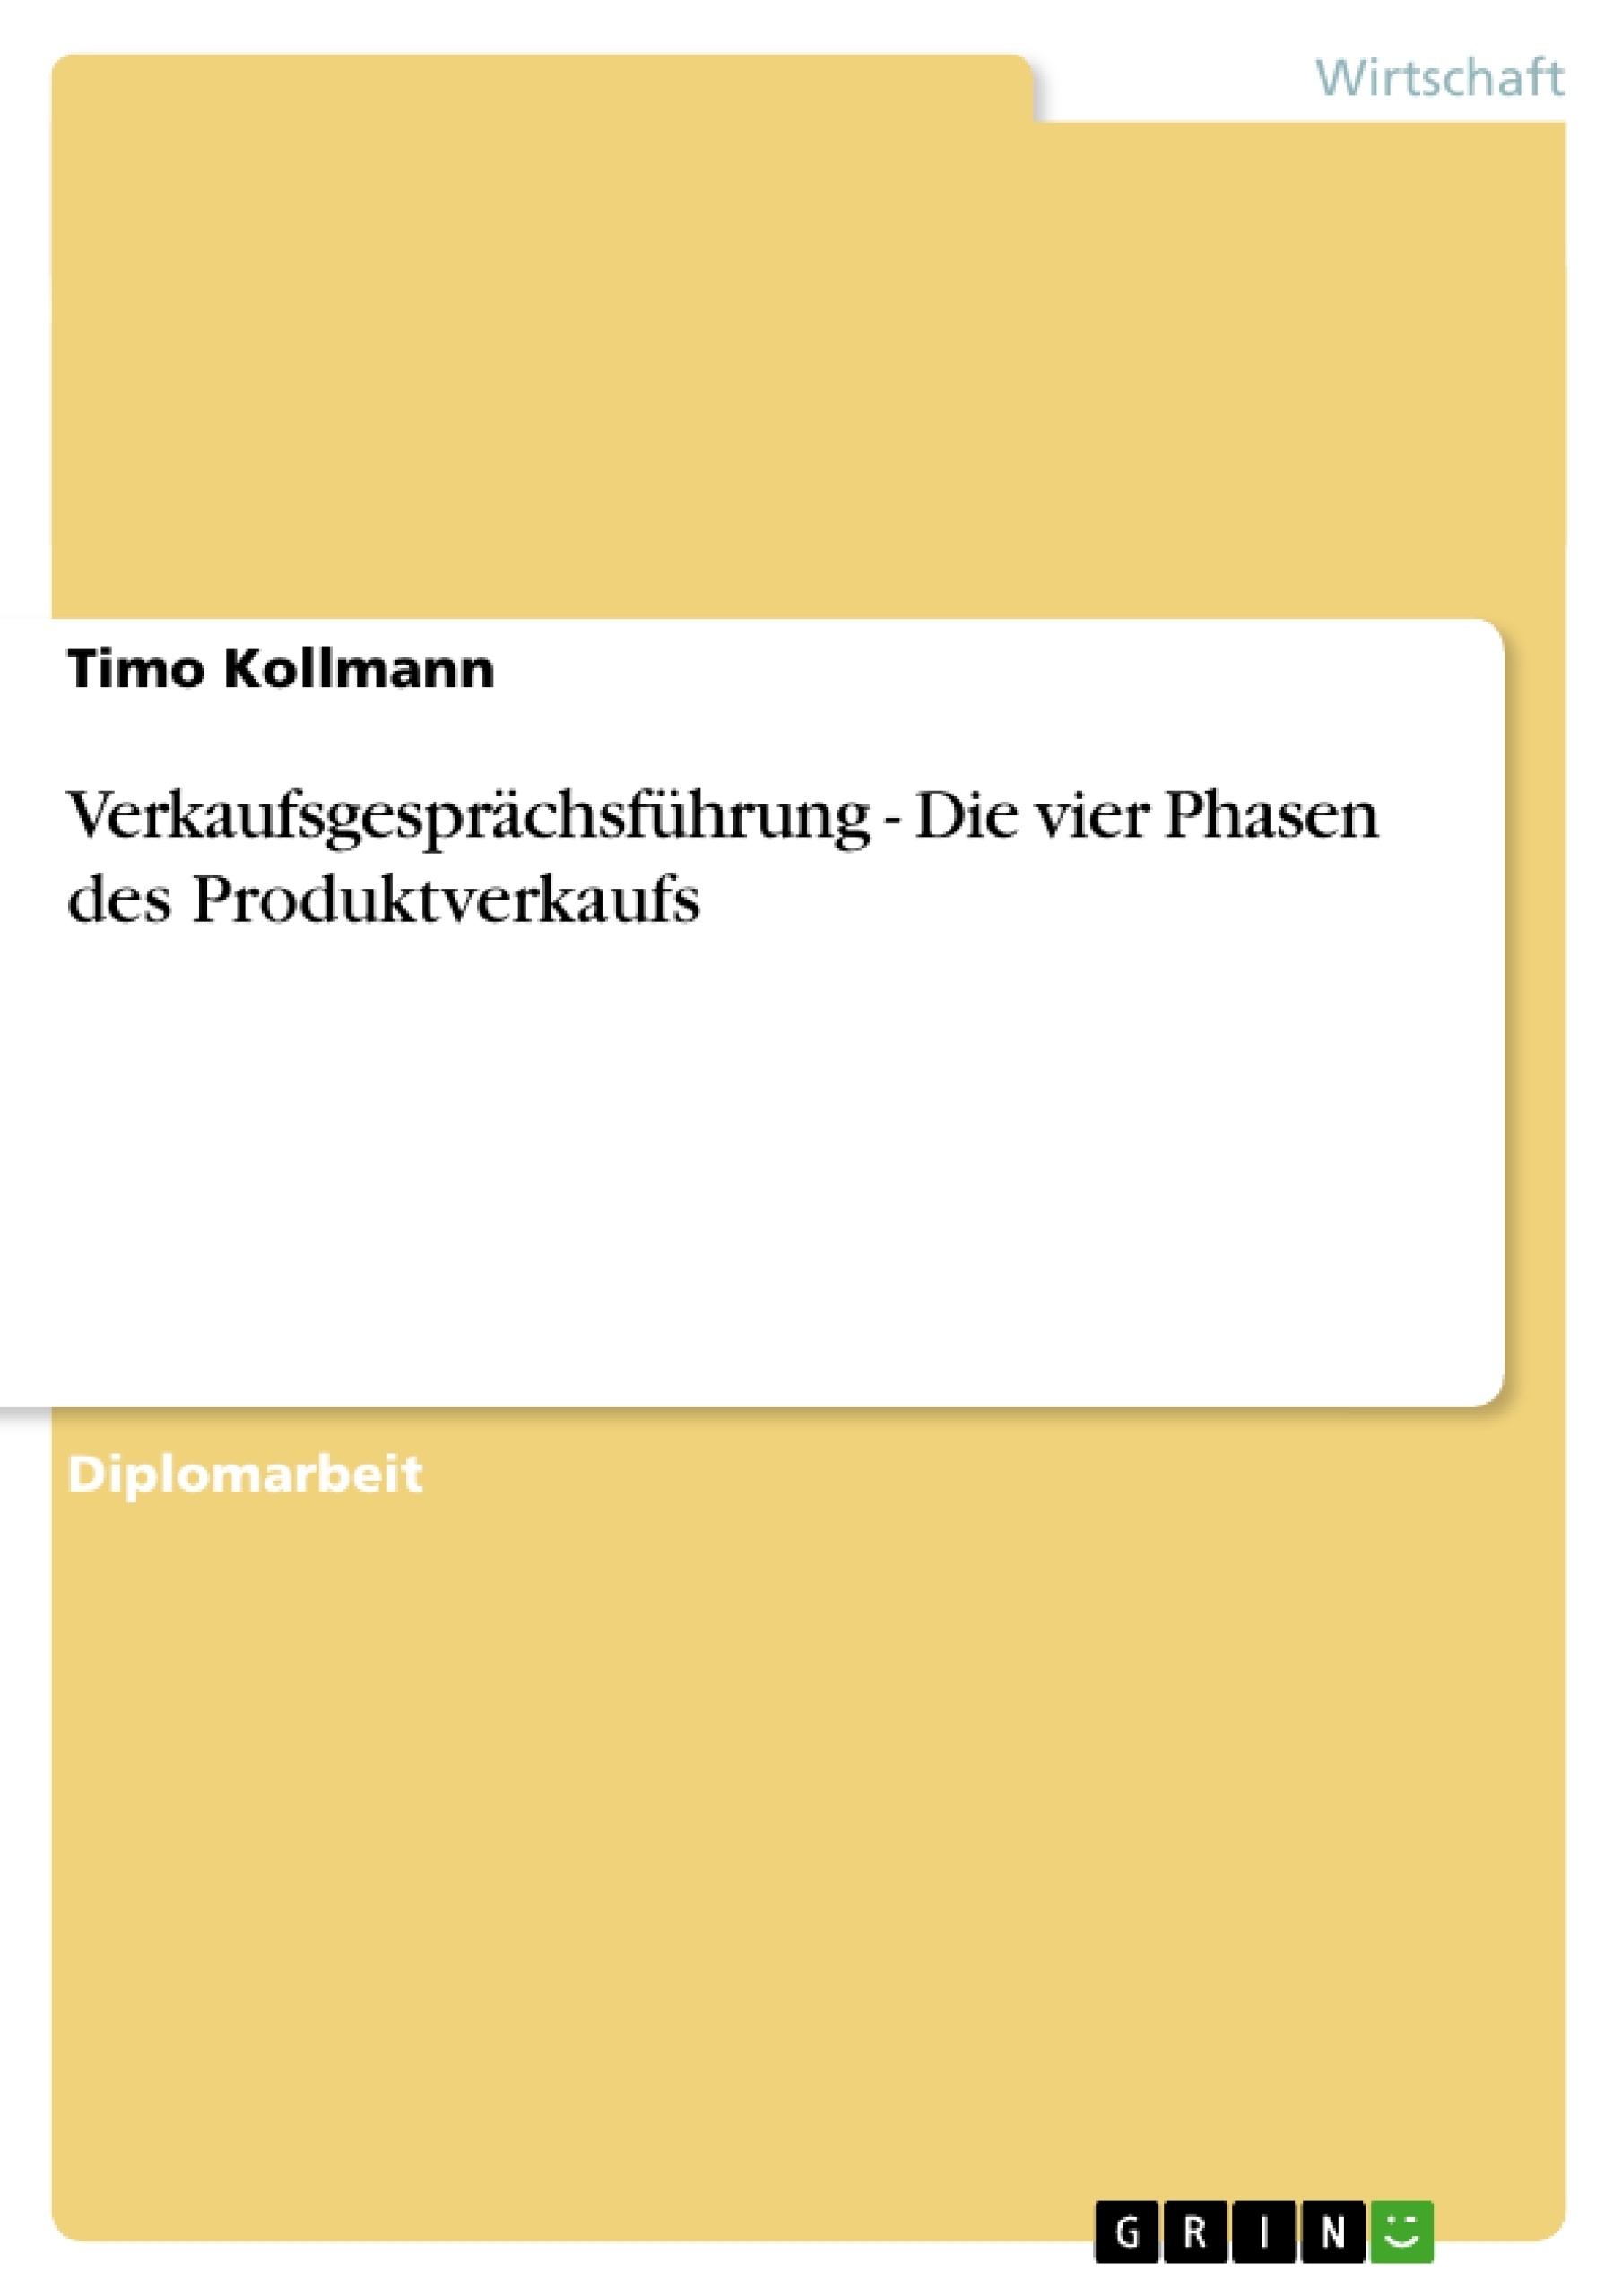 Title: Verkaufsgesprächsführung - Die vier Phasen des Produktverkaufs